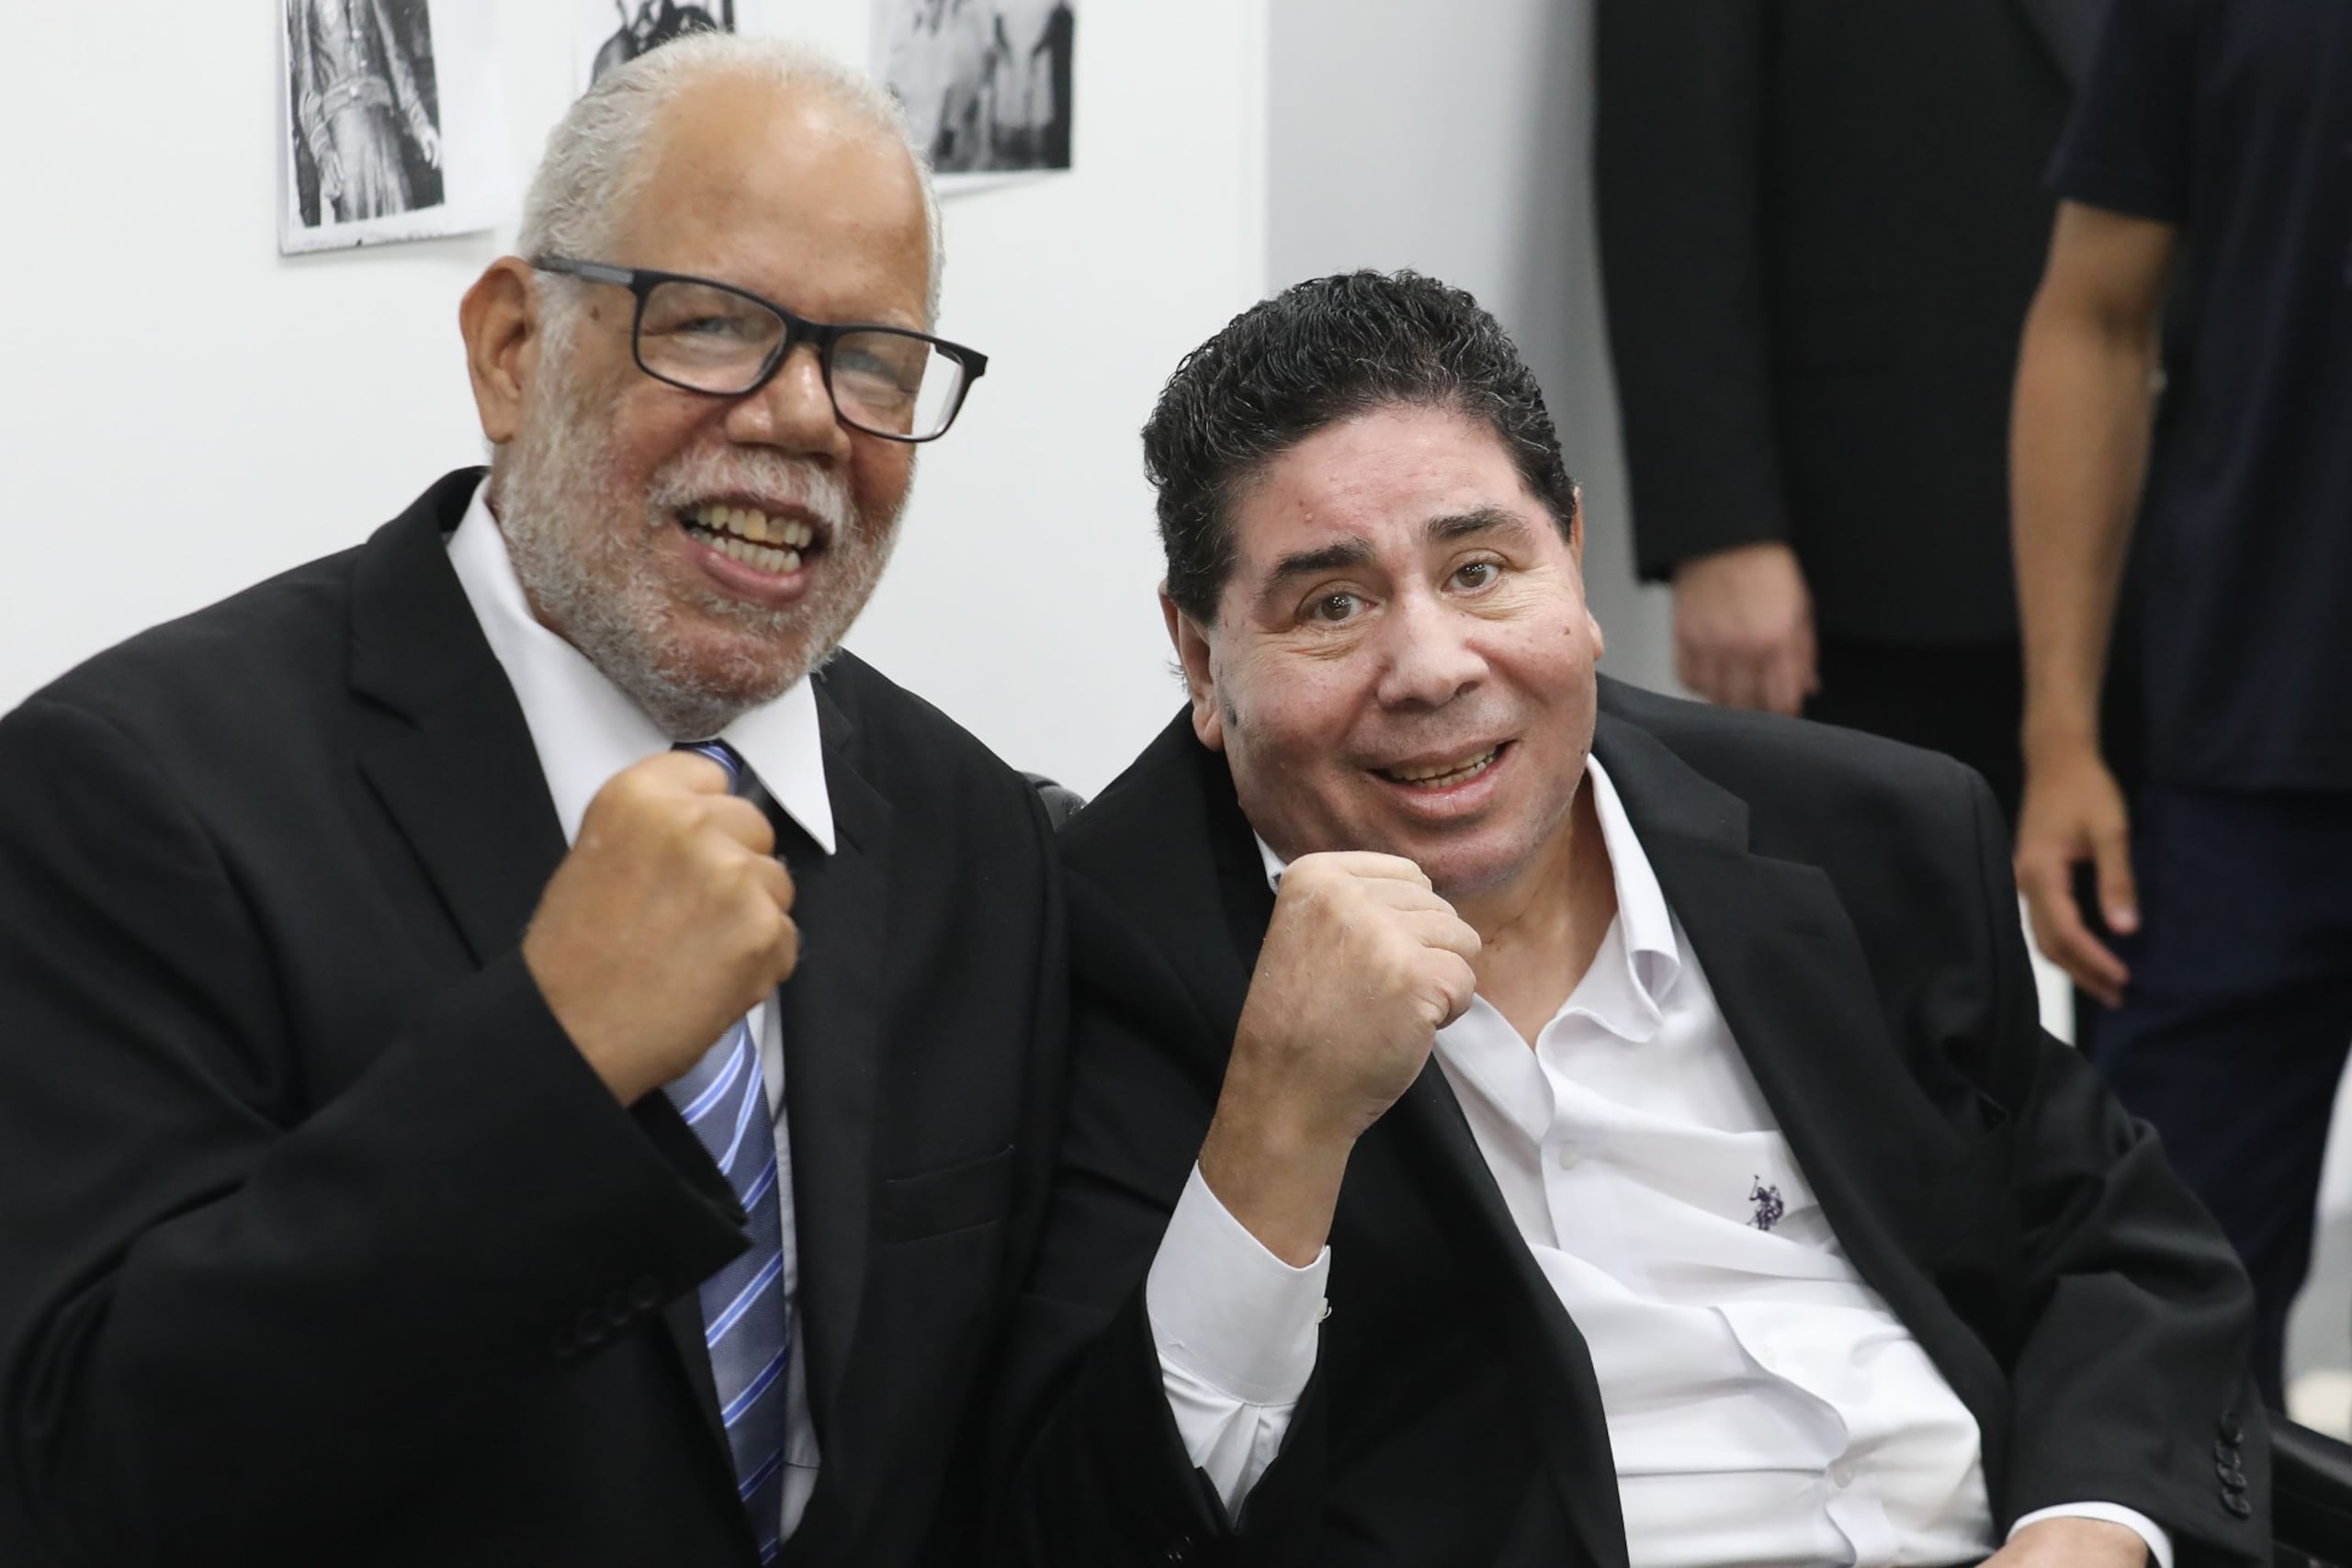 José Luis Vellón y Wilfredo Gómez posan para el lente fotográfico en la ceremonia realizada en el Senado.